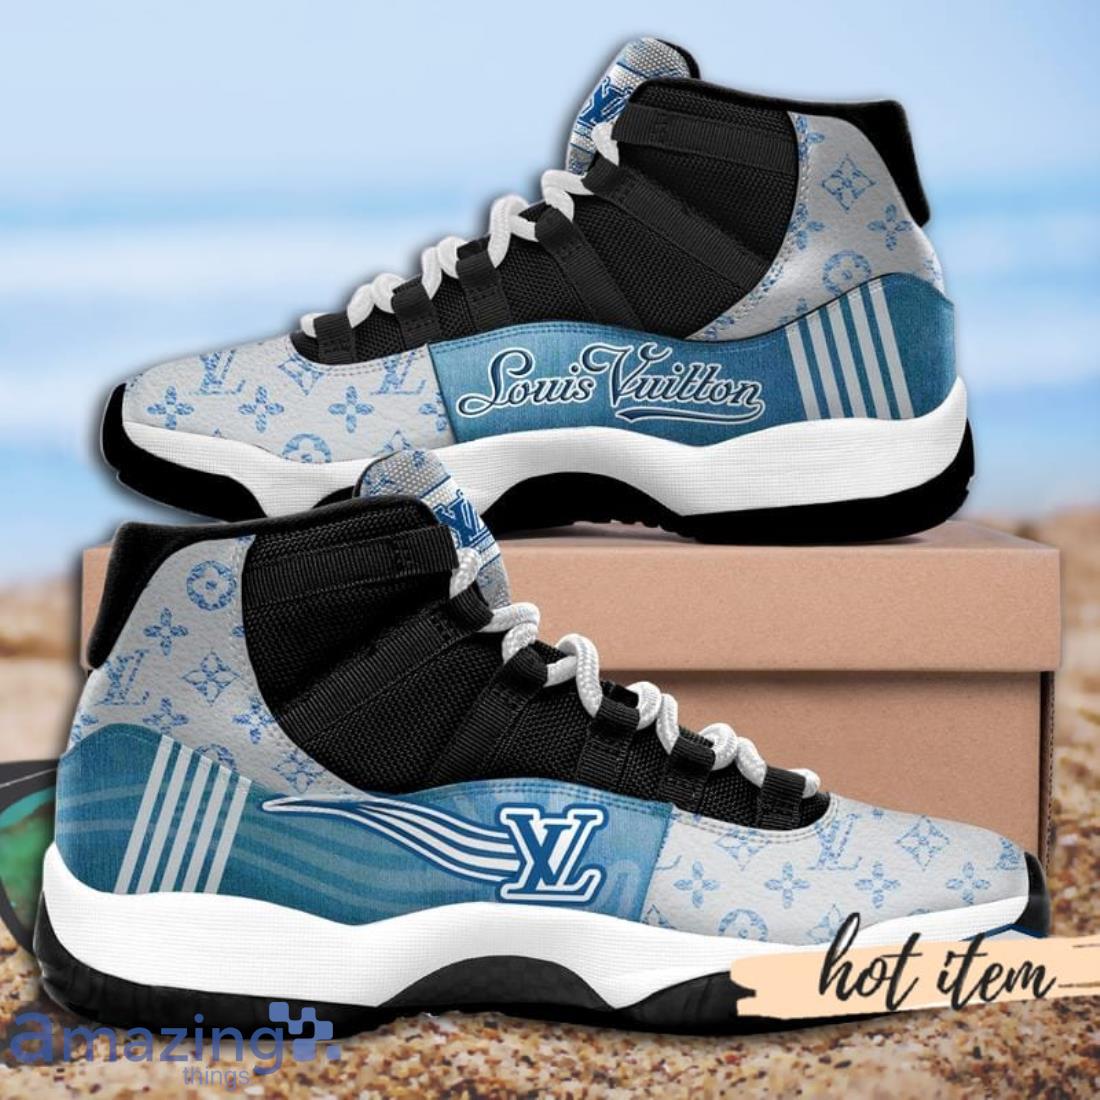 Louis Vuitton Geometric Sporty Air Jordan 11 Shoes